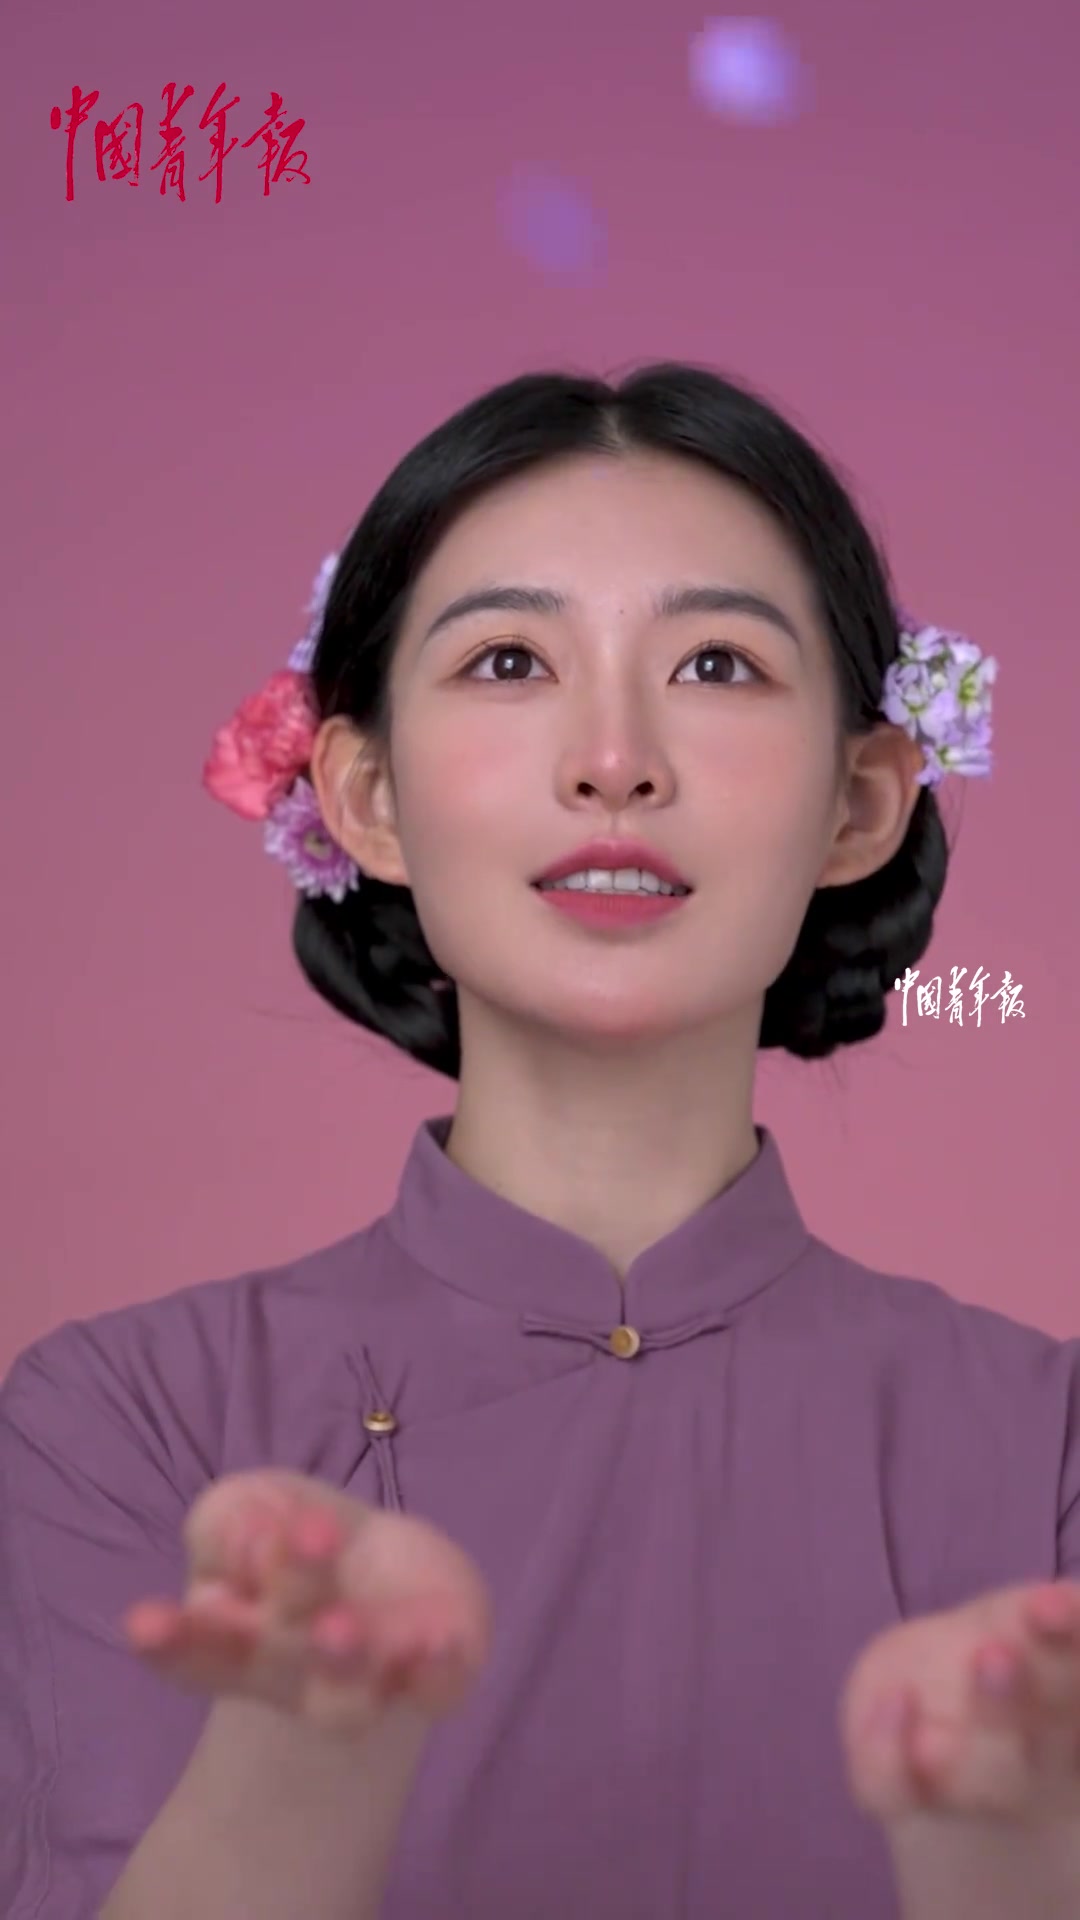 95后女孩拍摄中国风变妆视频惊艳网友